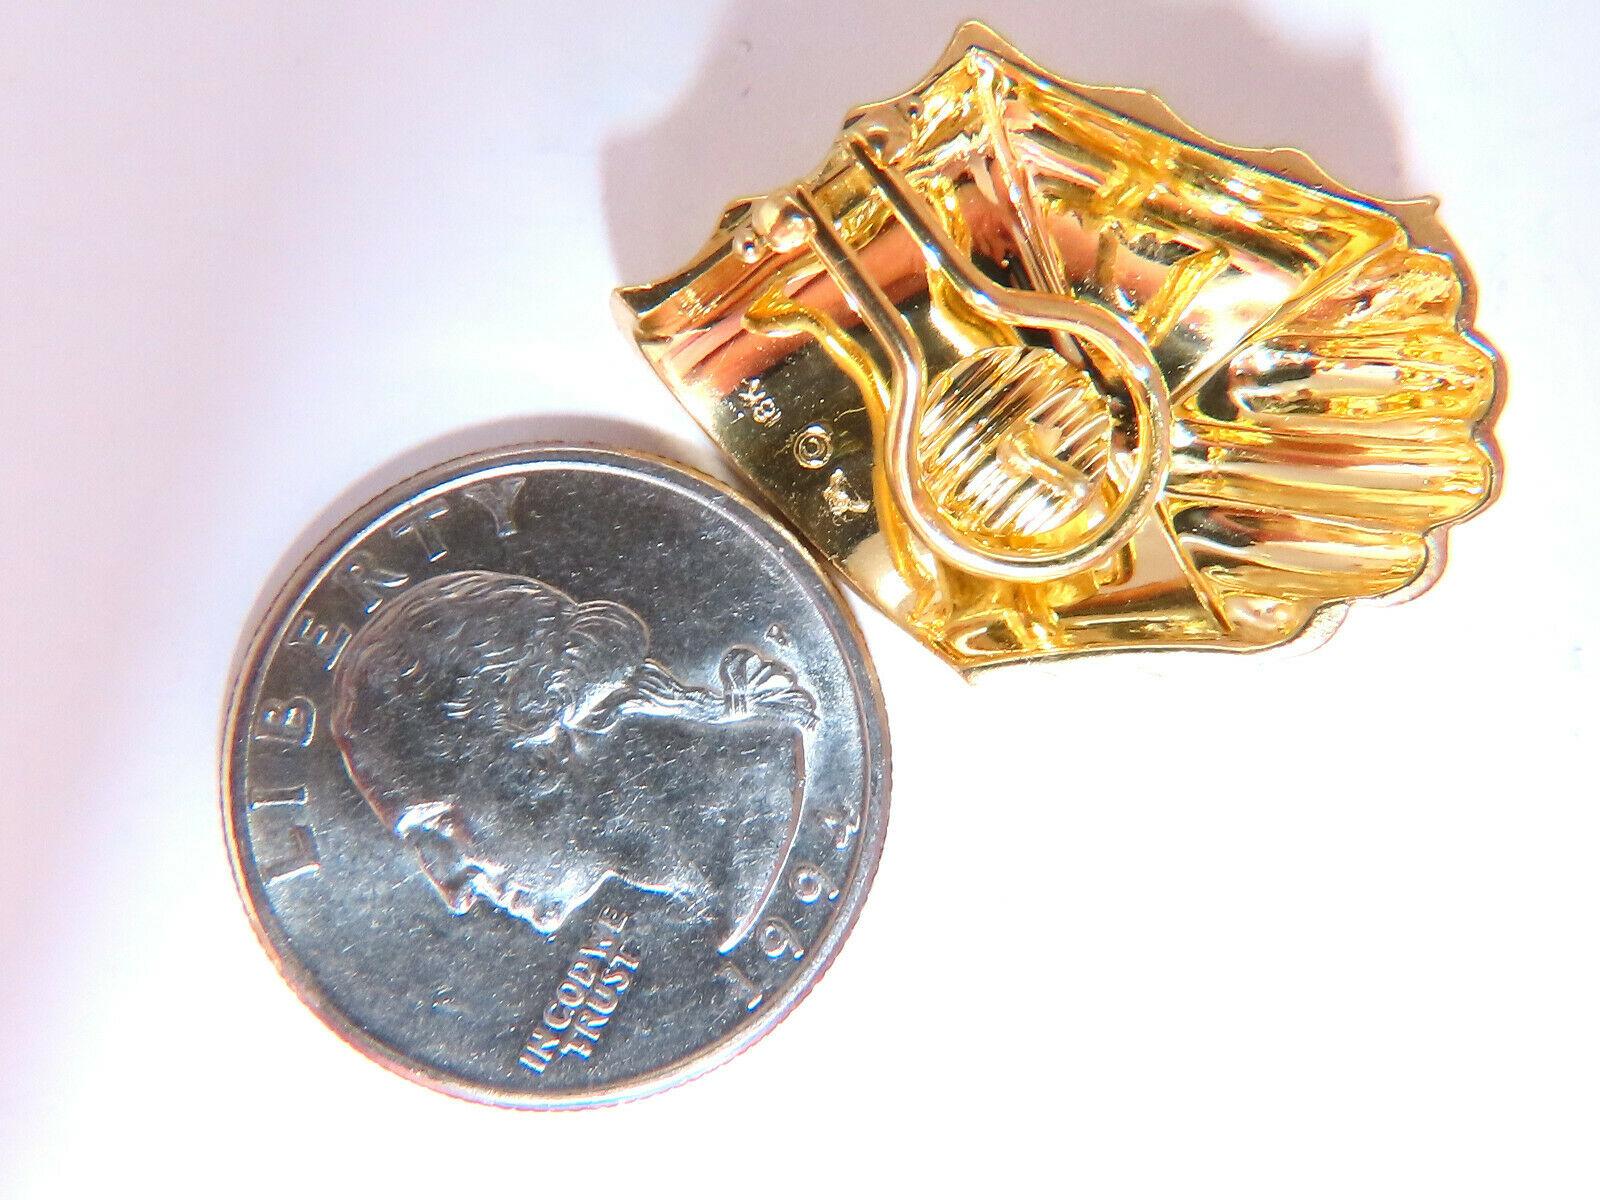 Muschel strukturierte Clip-Ohrringe

Abmessungen: 

31 x 22 mm

Tiefe: 7 mm

Bequemer Omega-Clip

19.7 Gramm / 18kt. Gelbgold

Ohrringe sind wunderschön gemacht